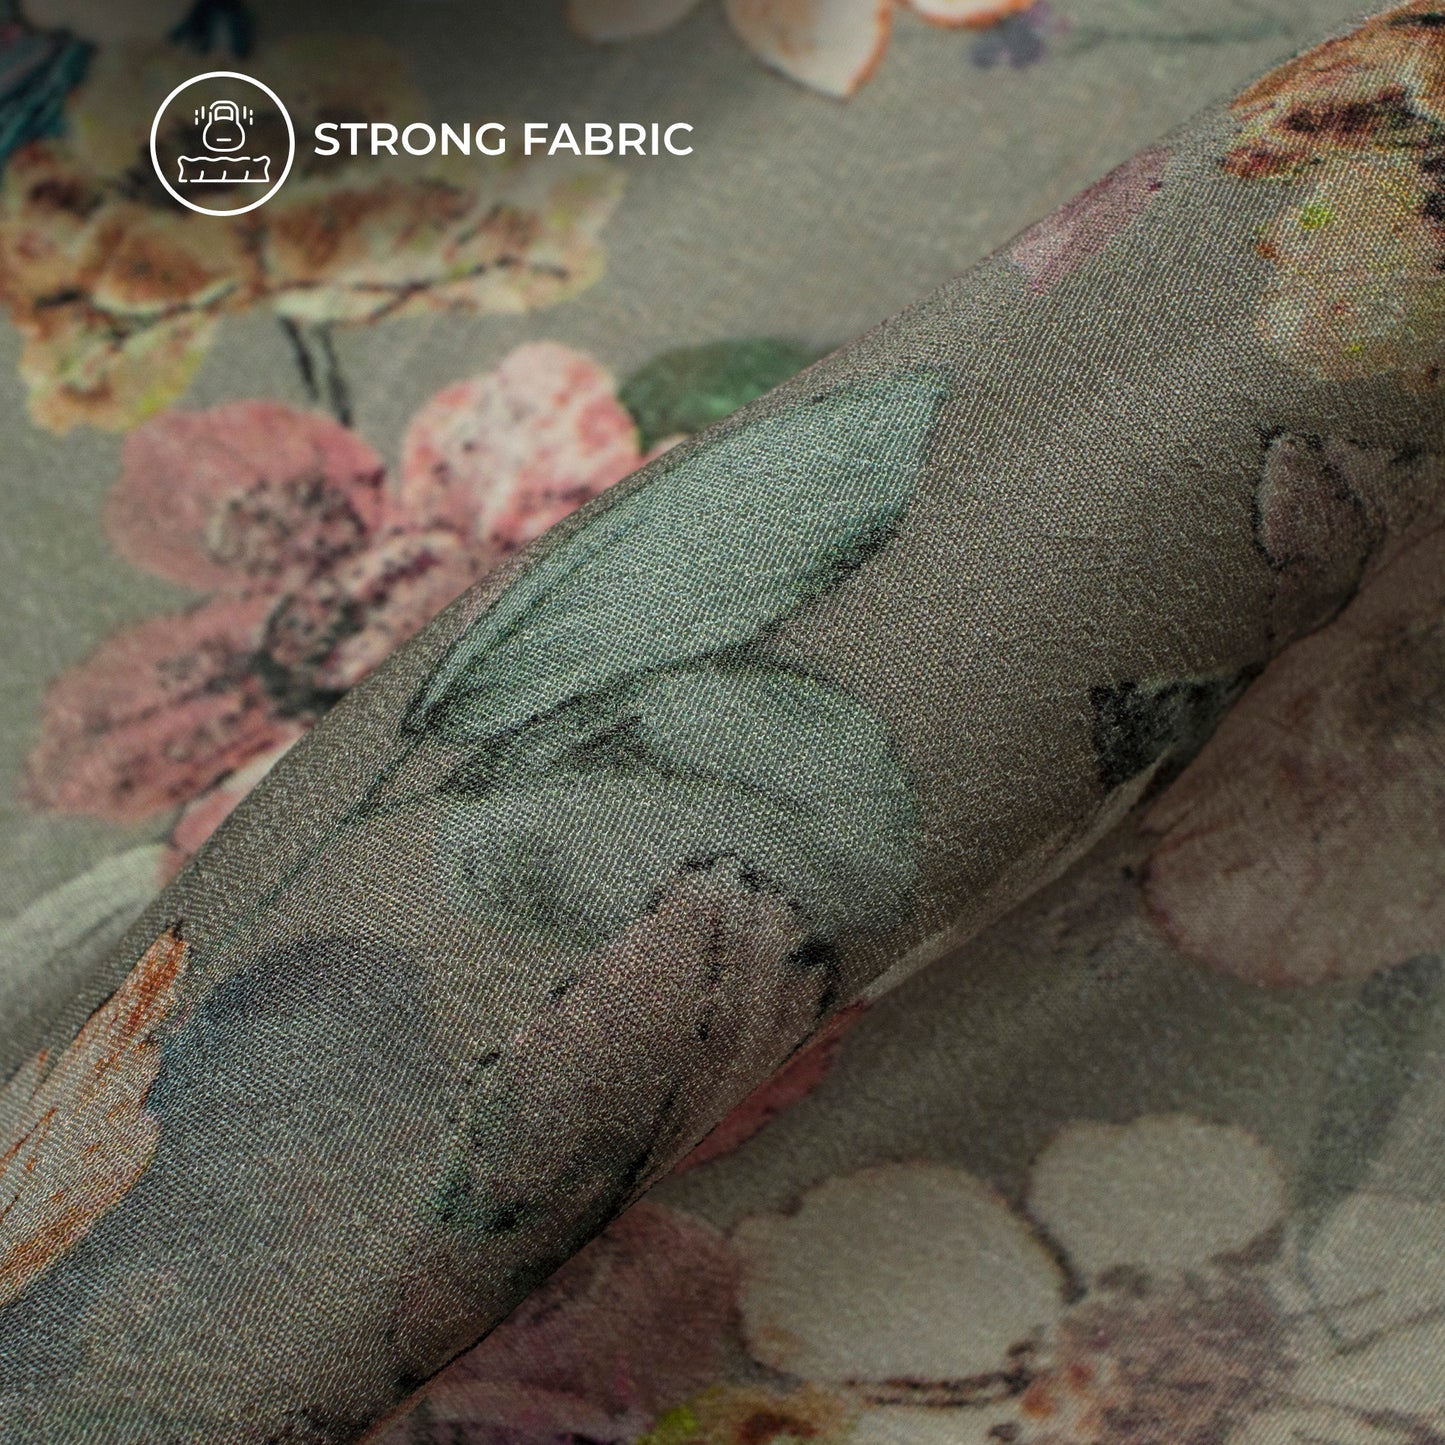 Pleasing Floral Digital Print Viscose Natural Crepe Fabric